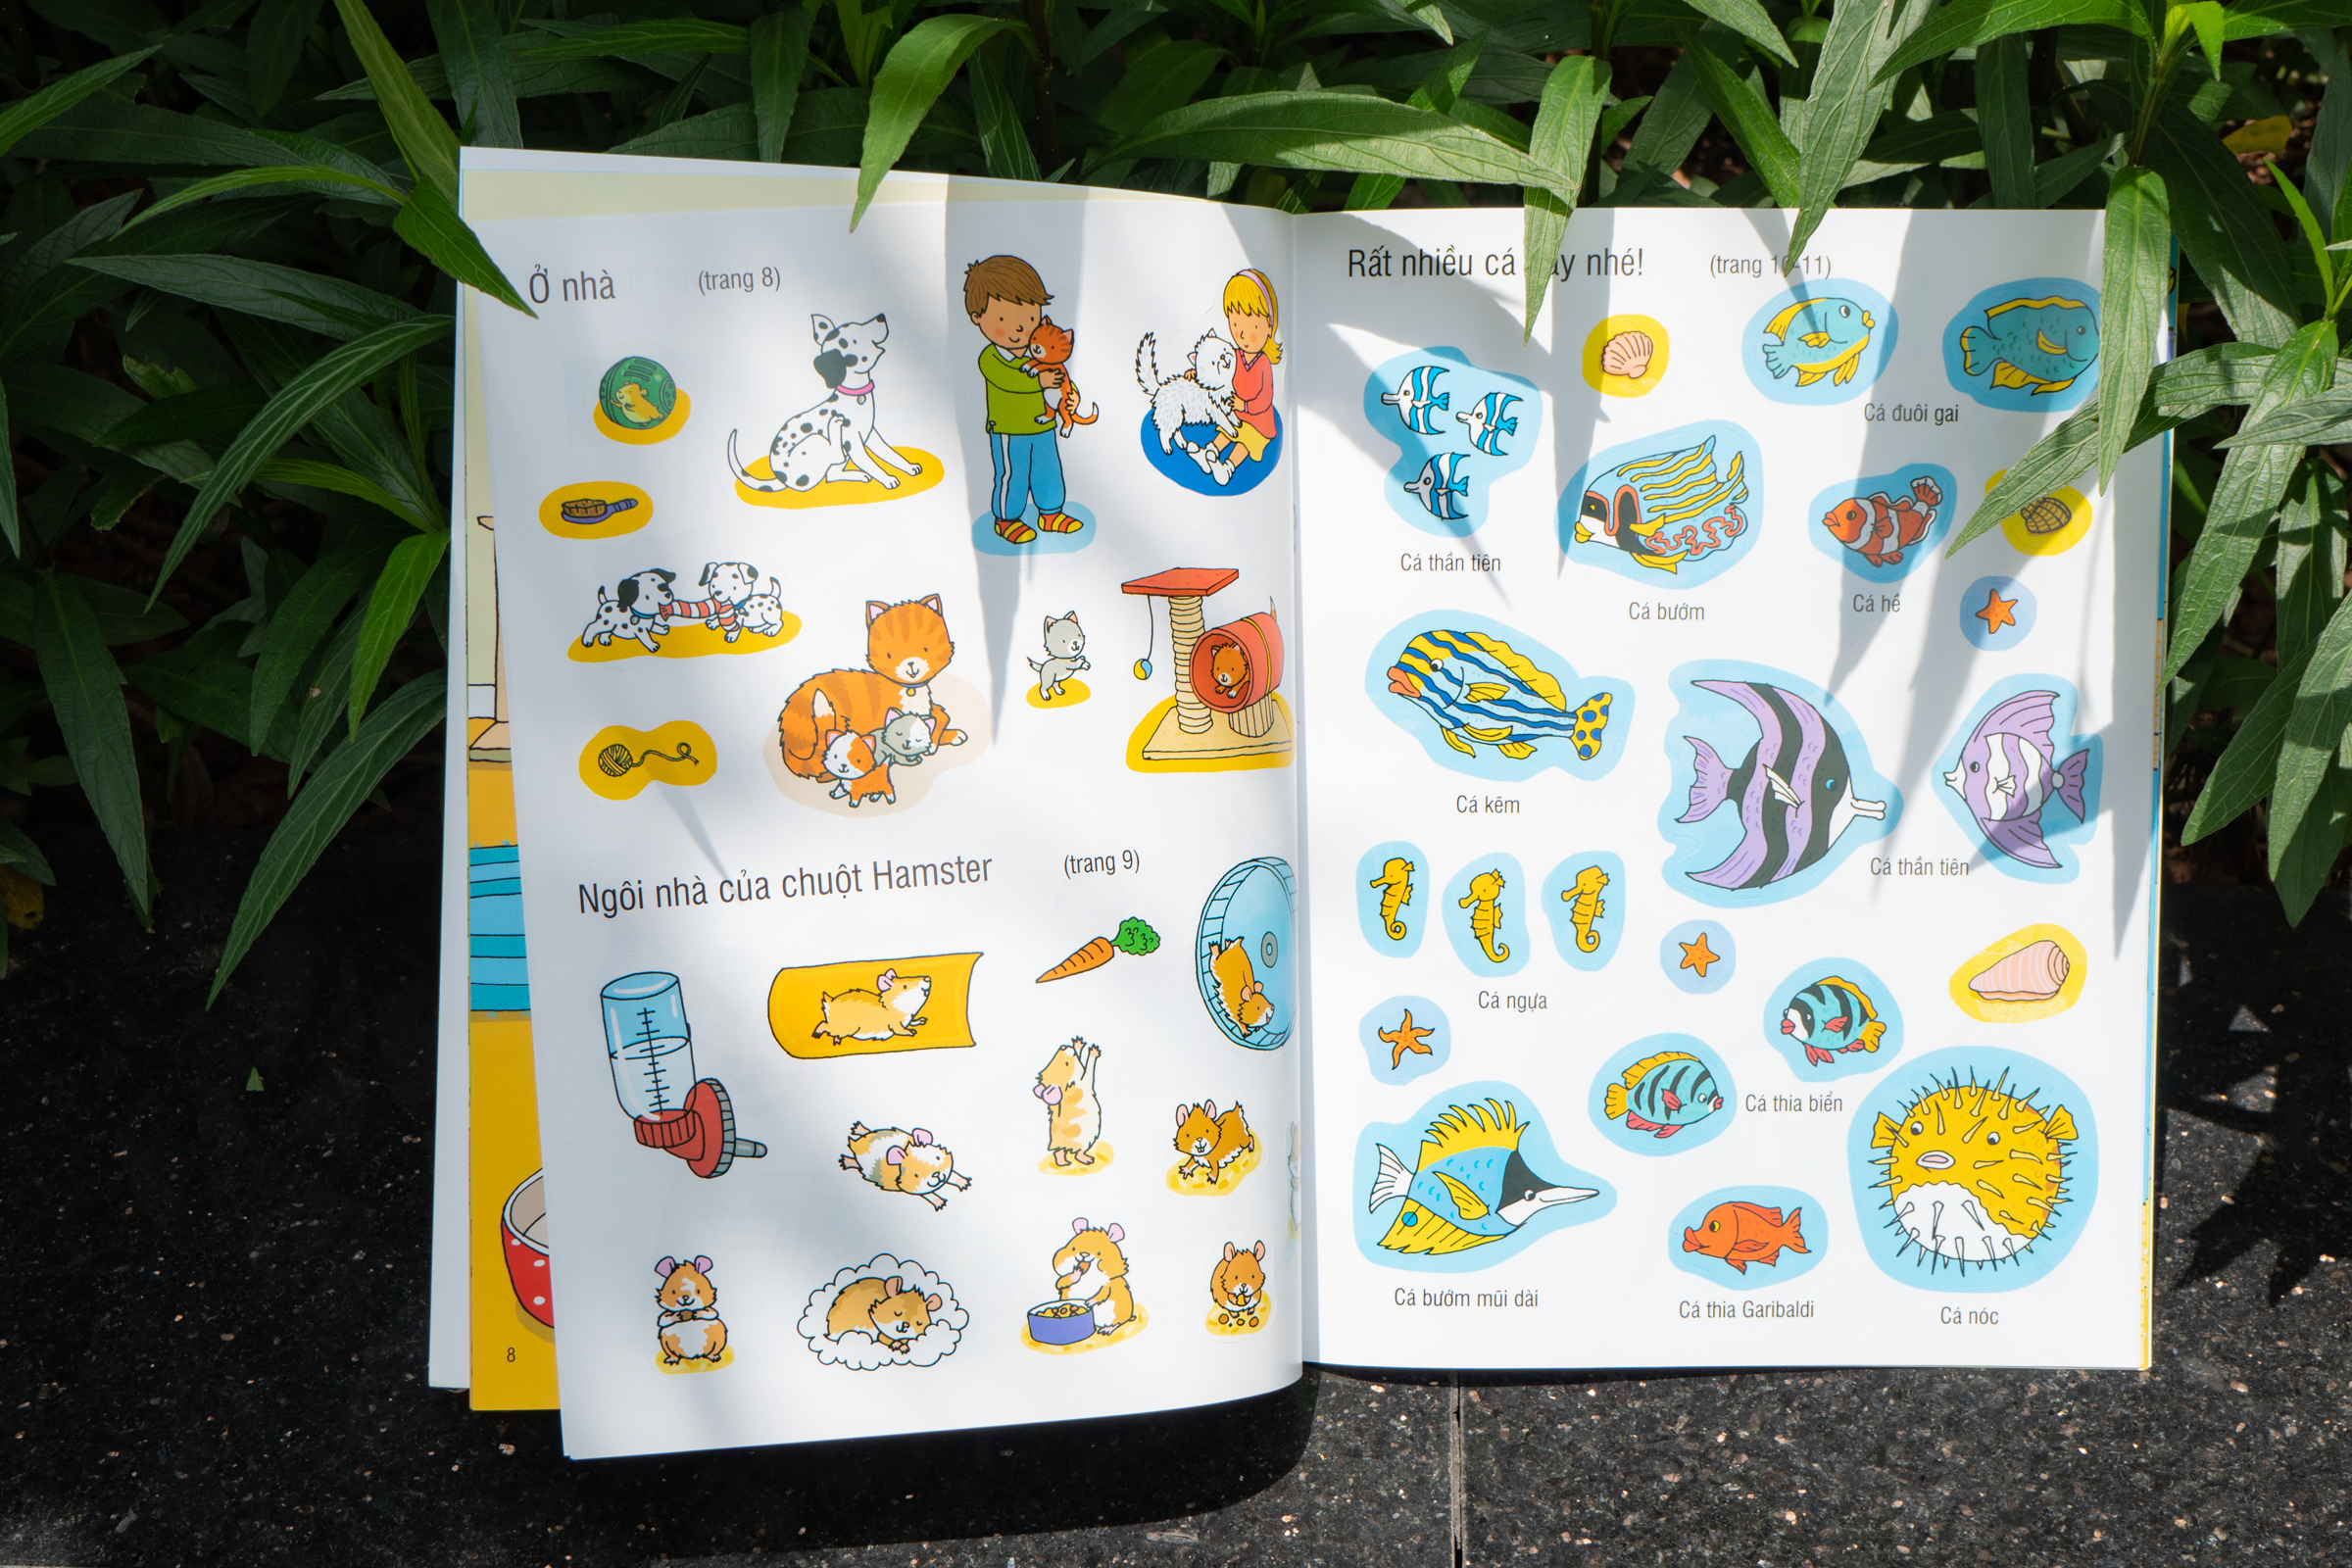 Sách - First Sticker Book - Sách dán hình đầu đời cho bé (Nhiều chủ đề) - Đinh Tị Books